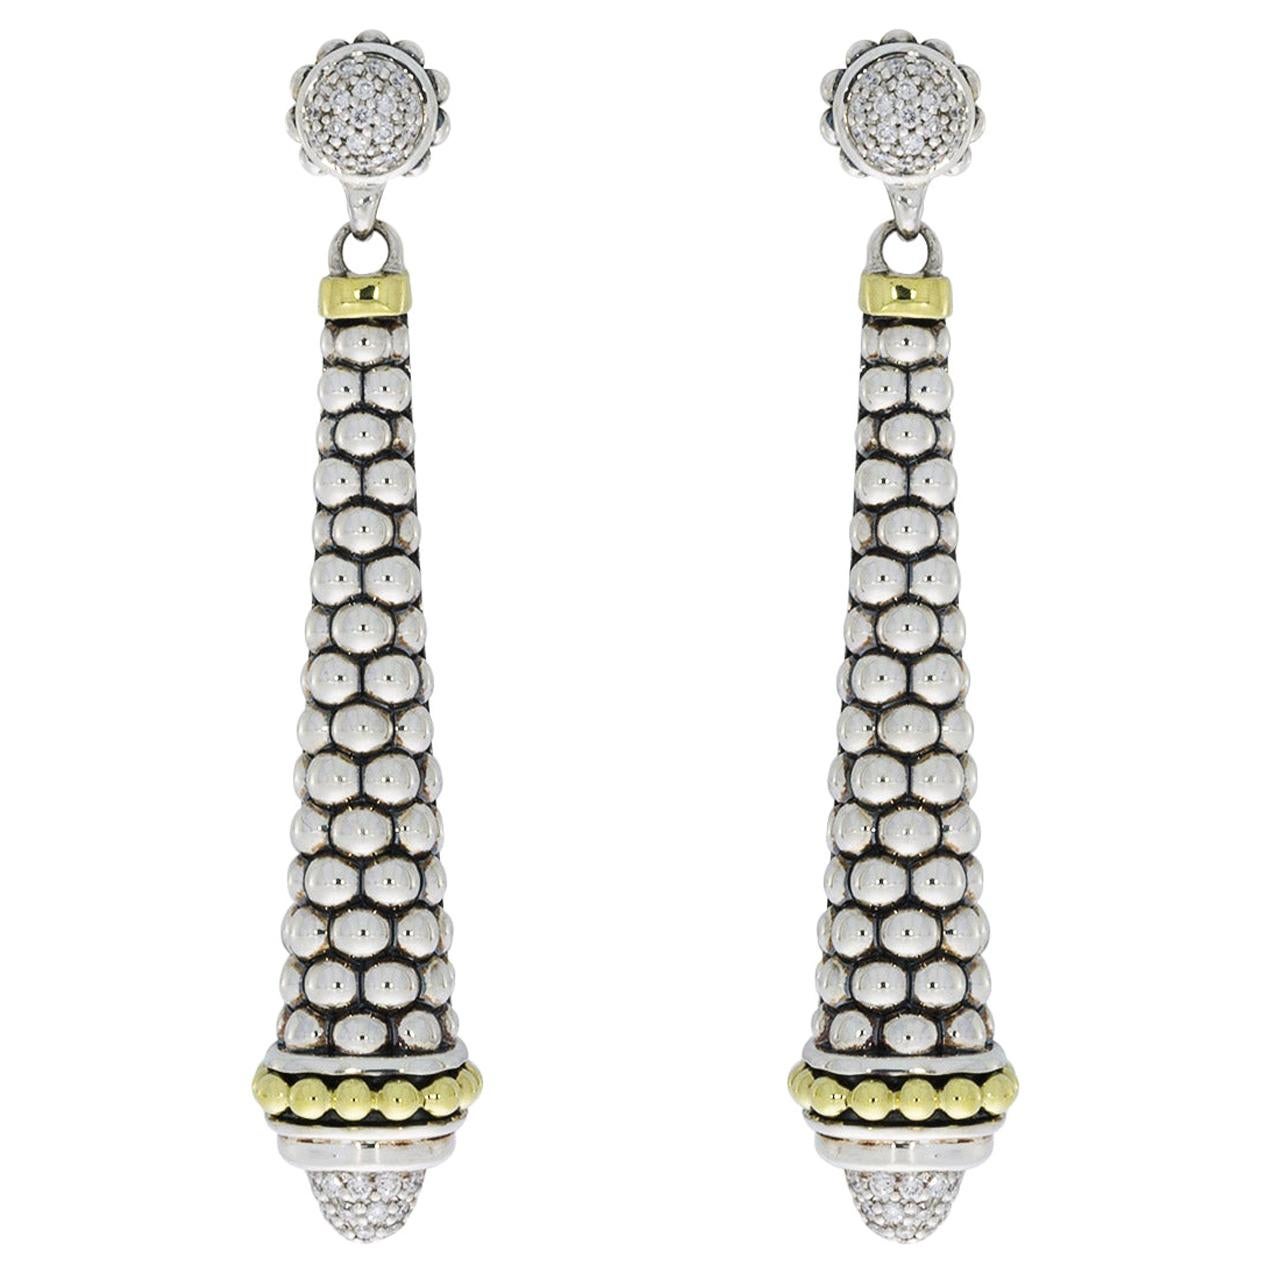 Lagos Signature Caviar Mixed Metals 0.42 Carat Round Diamond Drop Earrings